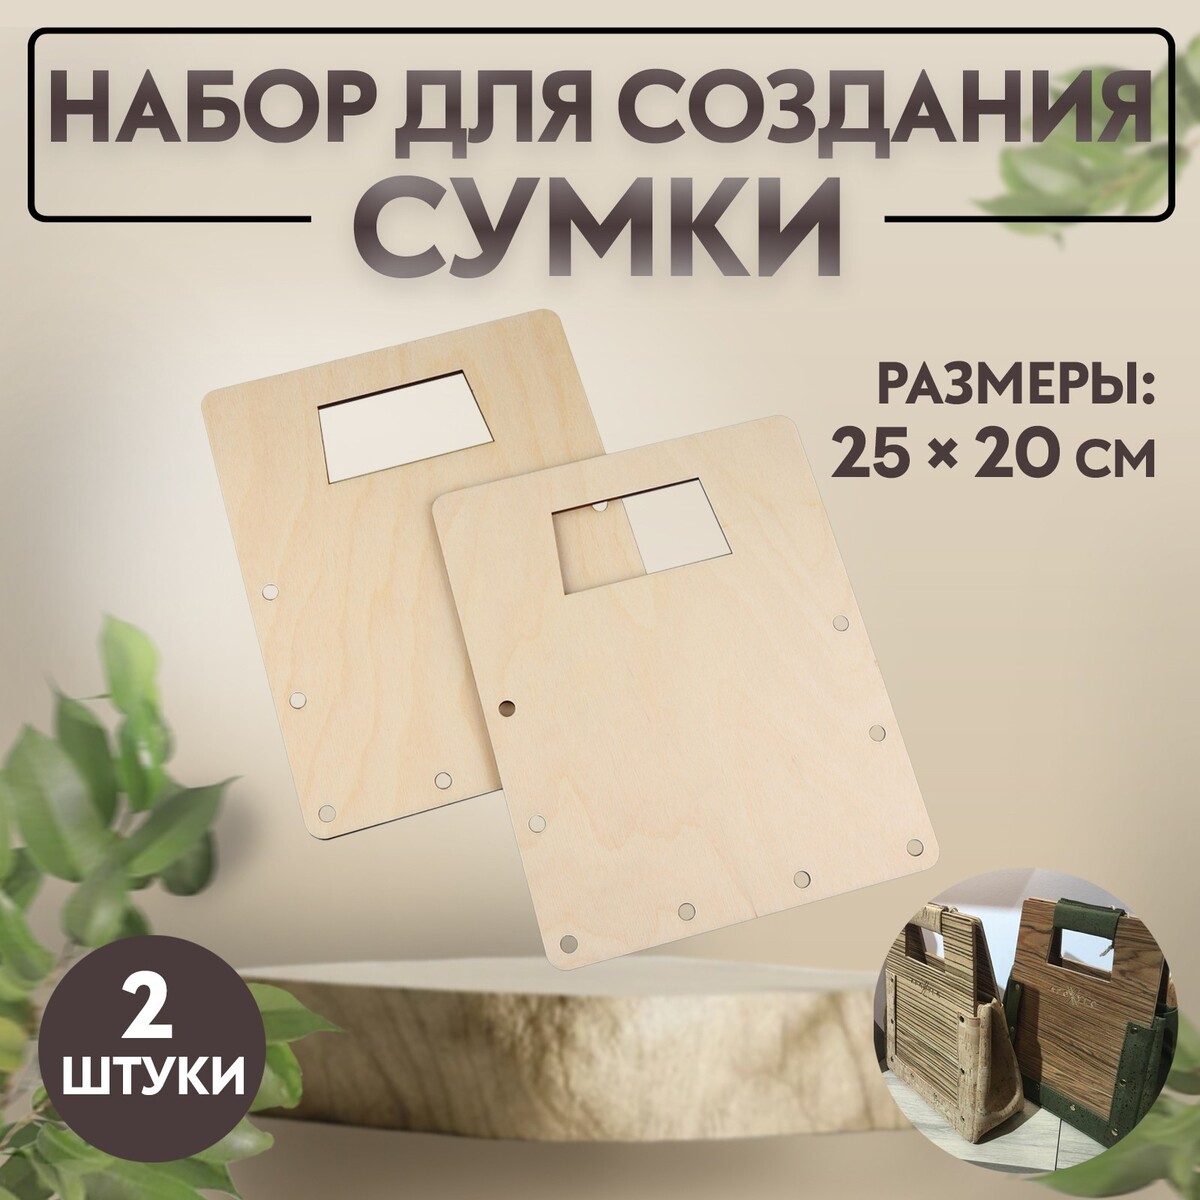 Набор для создания сумки, из дерева, 25 × 20 см набор наконечников для шнура d 4 мм 2 × 1 2 см 100 шт белый